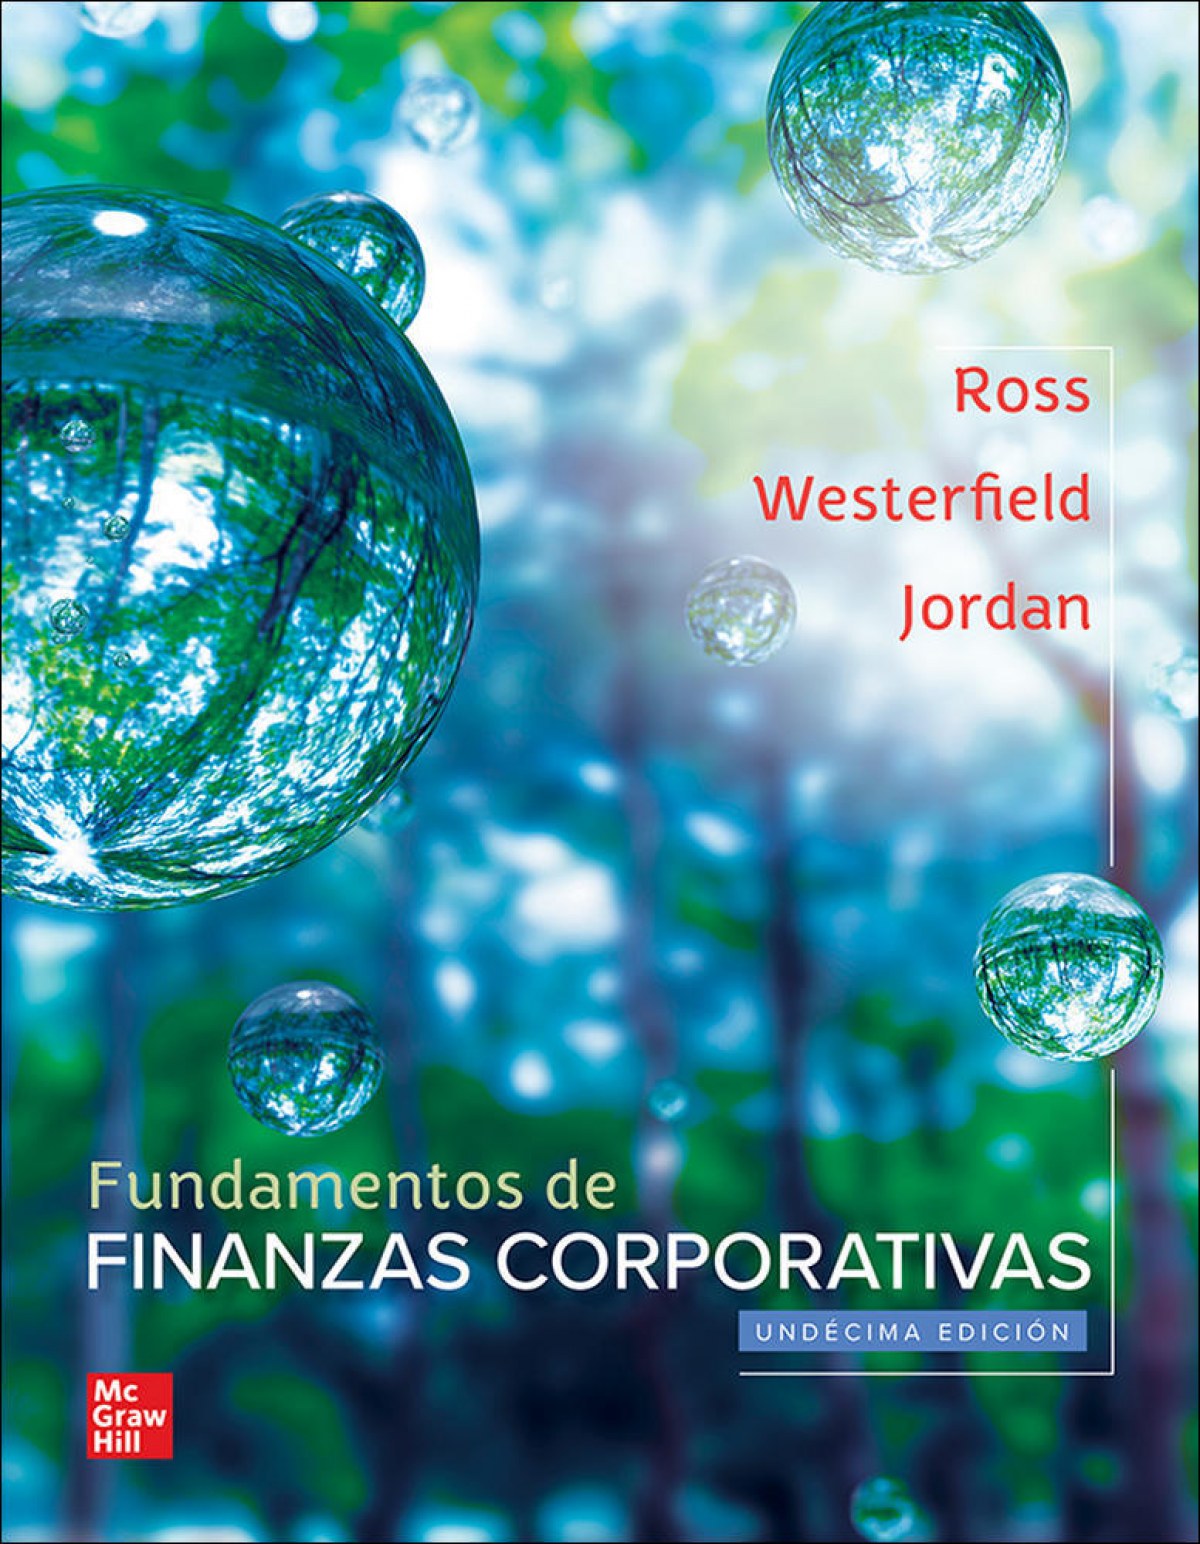 Fundamentos de finanzas corporativas - Ross/Westerfield/Jordan